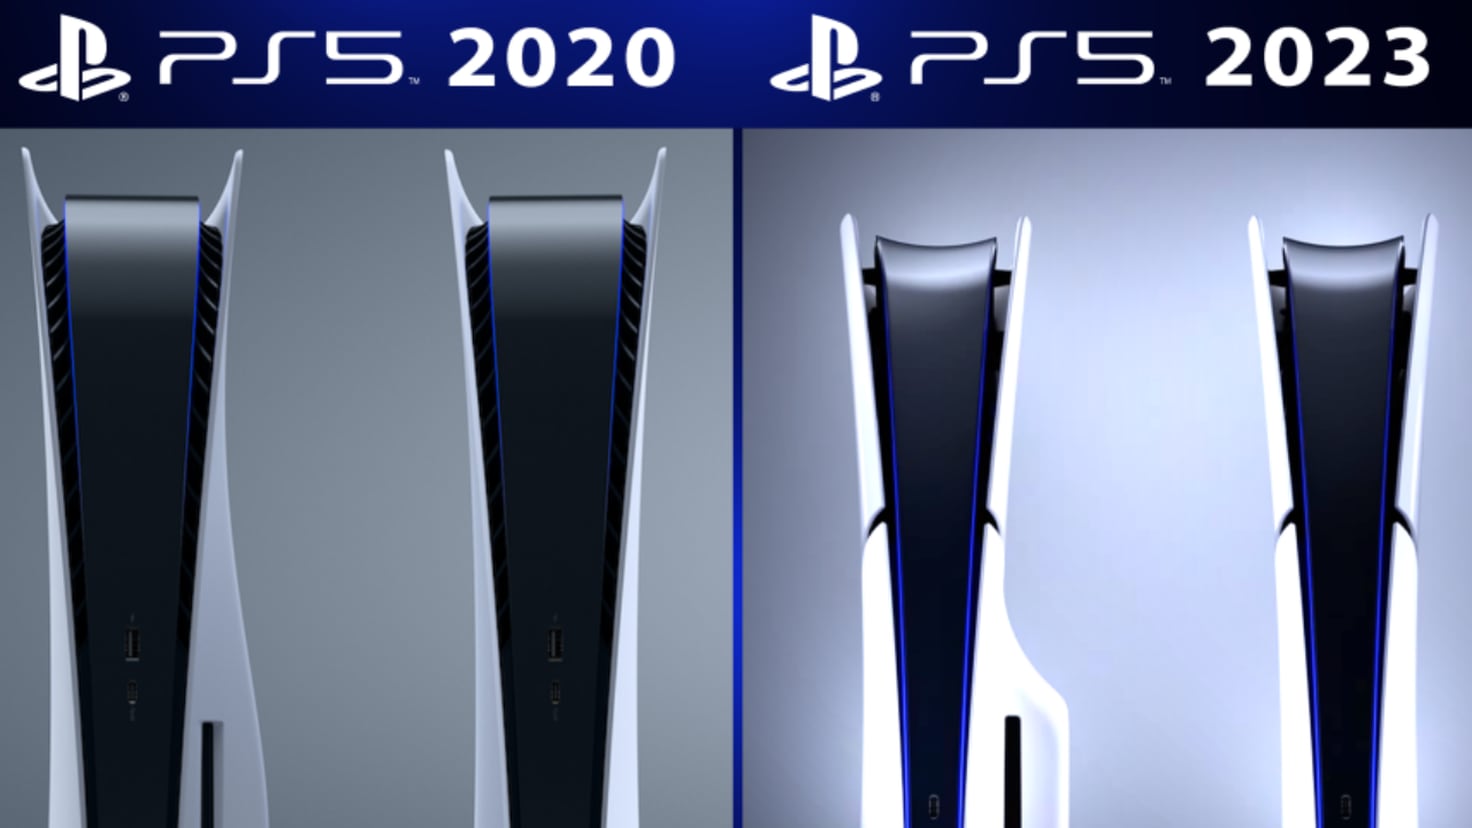 PS5 Slim es oficial: características, precios, y fecha de lanzamiento